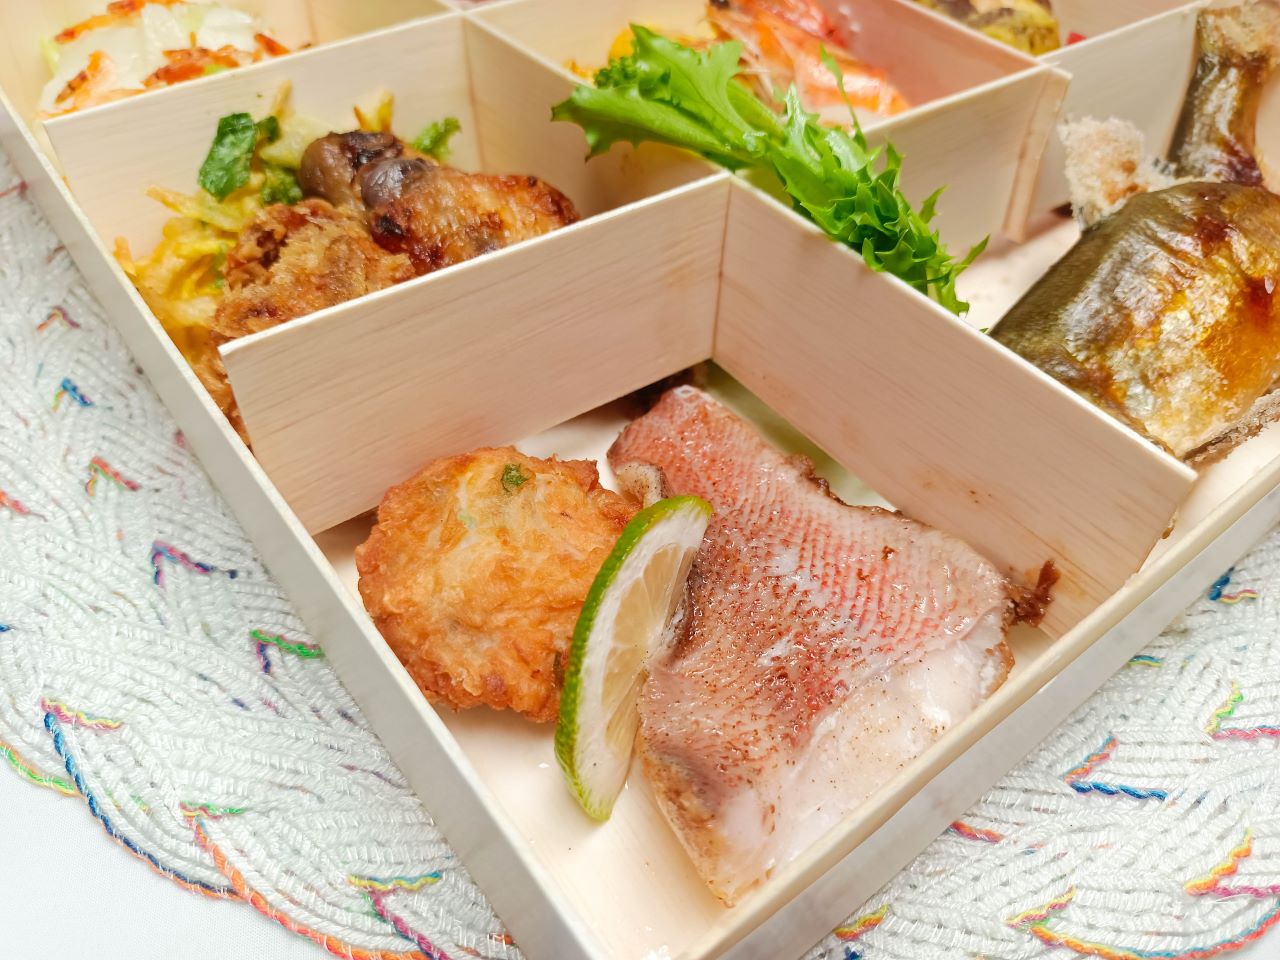 (信義區美食)全台北最強的日式吃到飽餐廳也推出了外帶餐盒滿千再打8折,讓你在家就可以享受美味的日式餐盒 -旭集和食集錦(台北與高雄分店皆有提供訂購) @Nancy將的生活筆計本